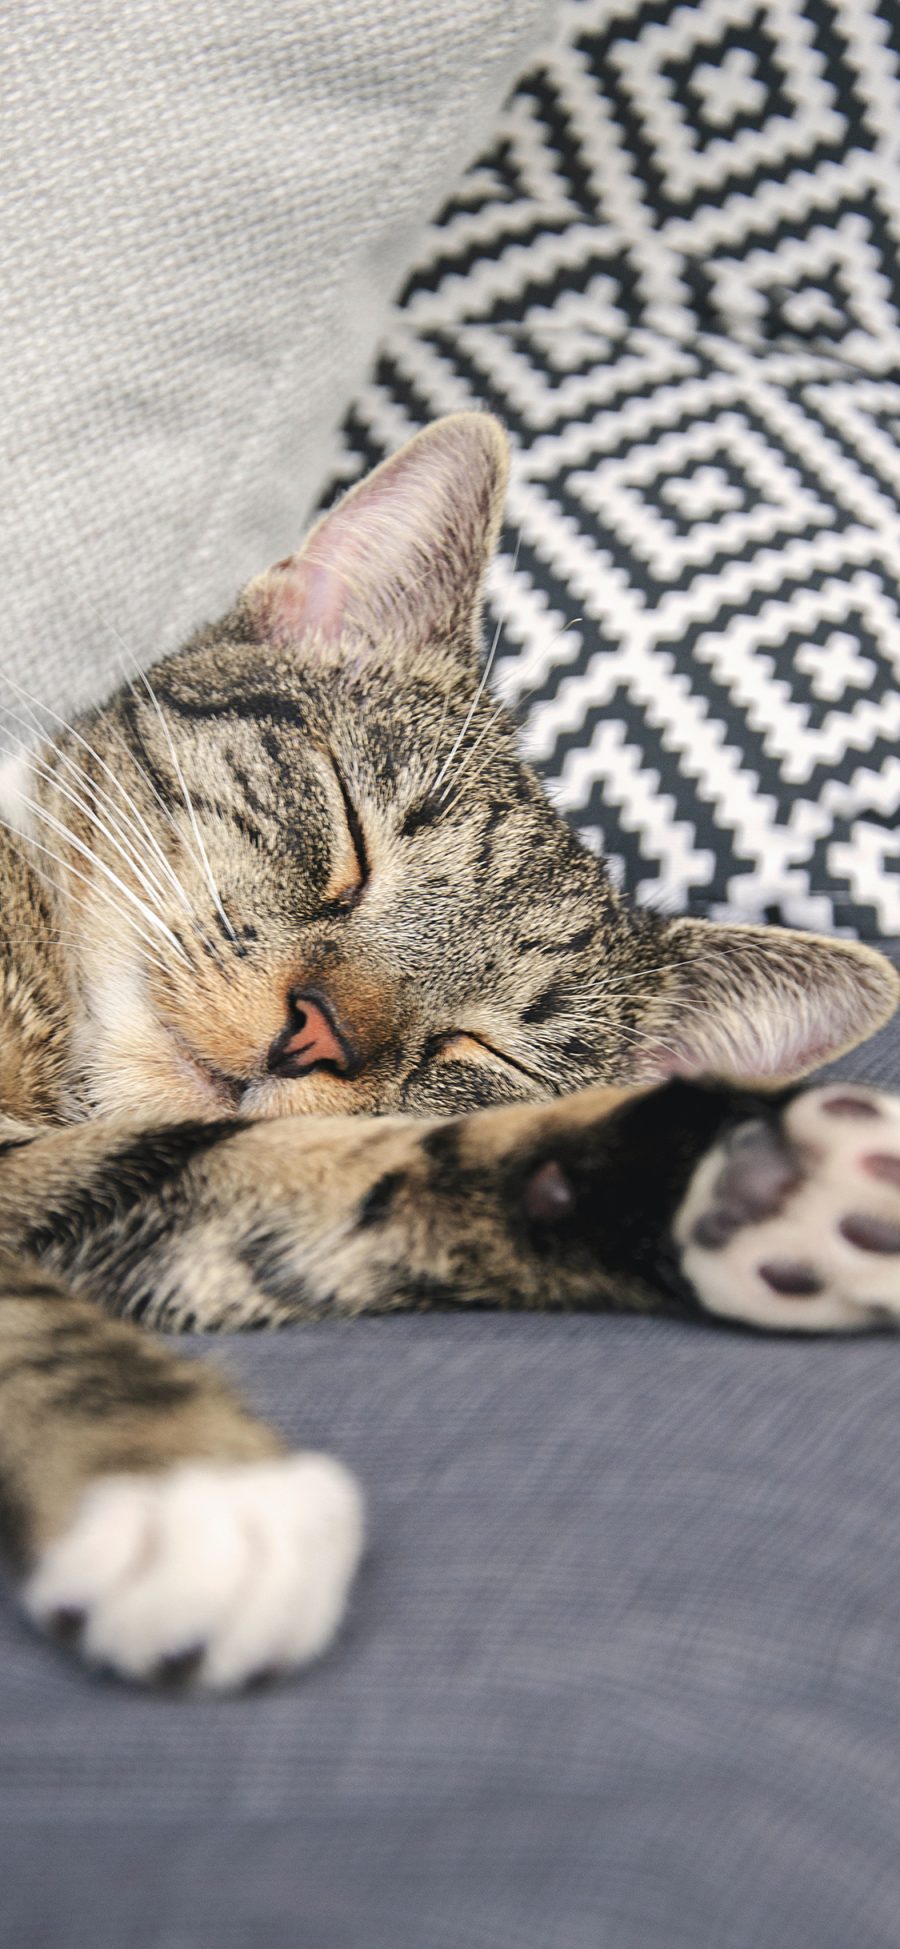 [2436×1125]猫咪 沙发 休憩 睡眠 苹果手机壁纸图片